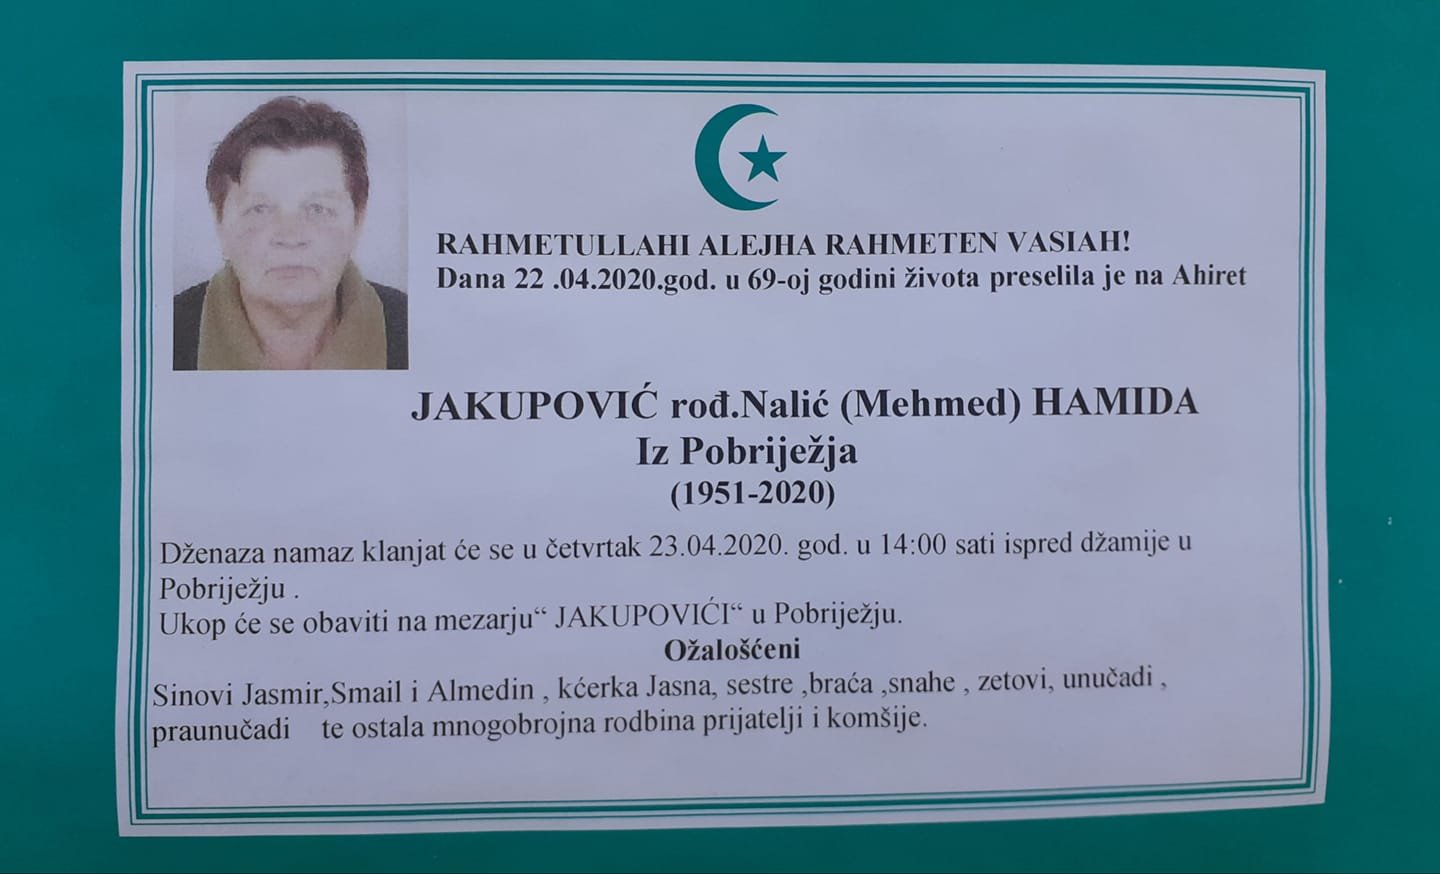 Jakupović (Mehmed) Hamida